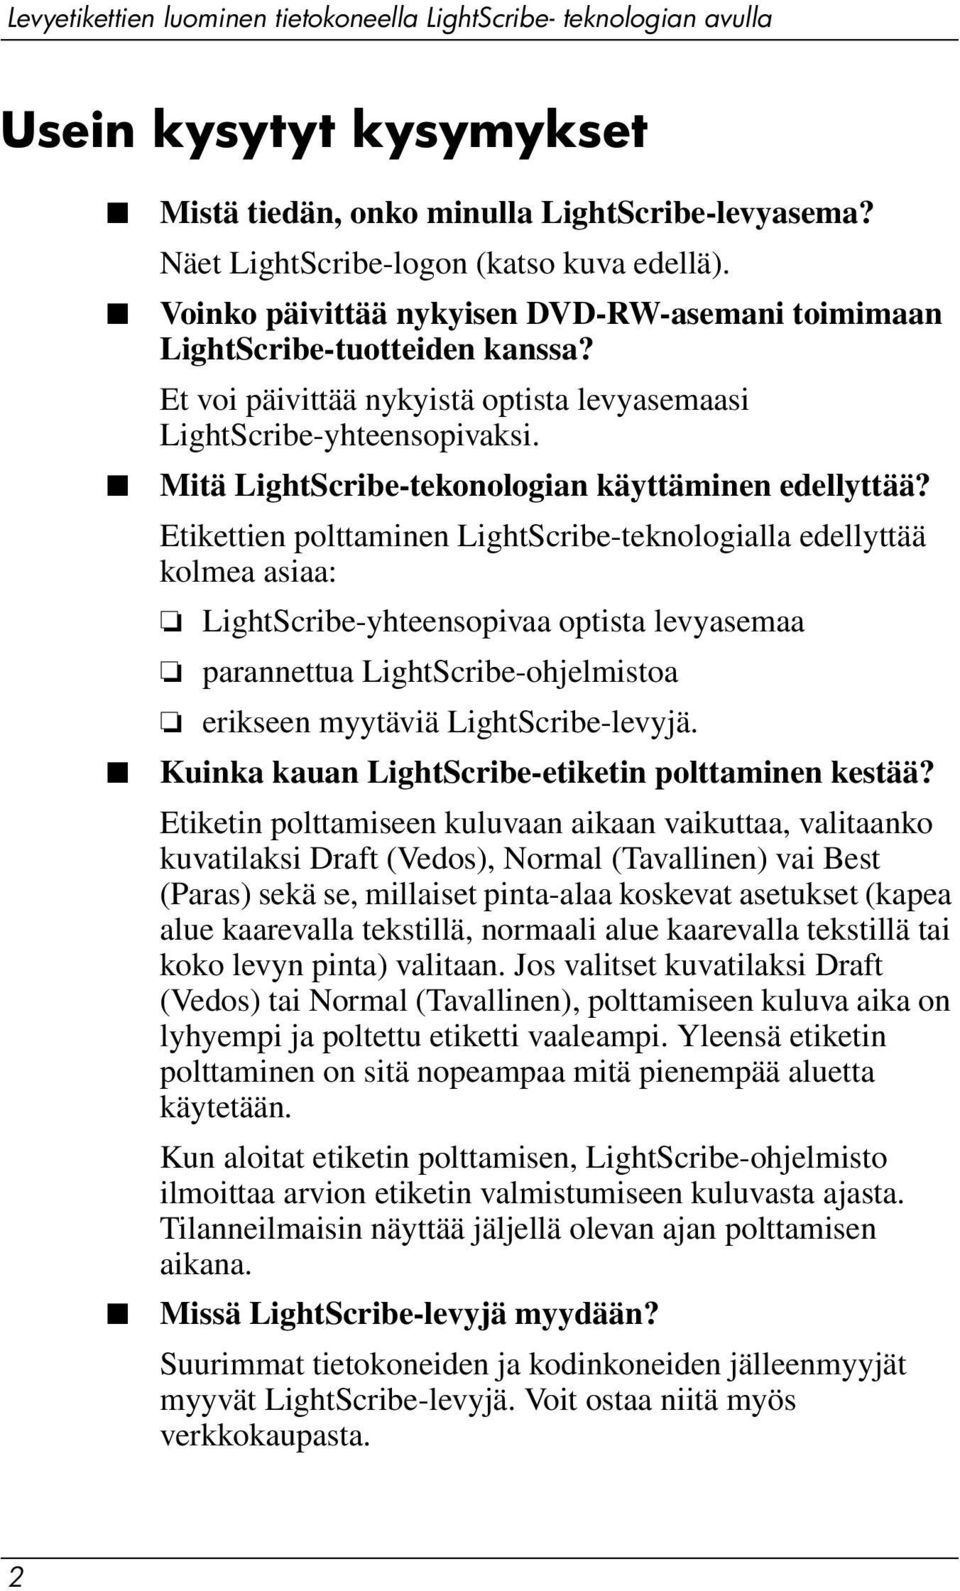 Etikettien polttaminen LightScribe-teknologialla edellyttää kolmea asiaa: LightScribe-yhteensopivaa optista levyasemaa parannettua LightScribe-ohjelmistoa erikseen myytäviä LightScribe-levyjä.